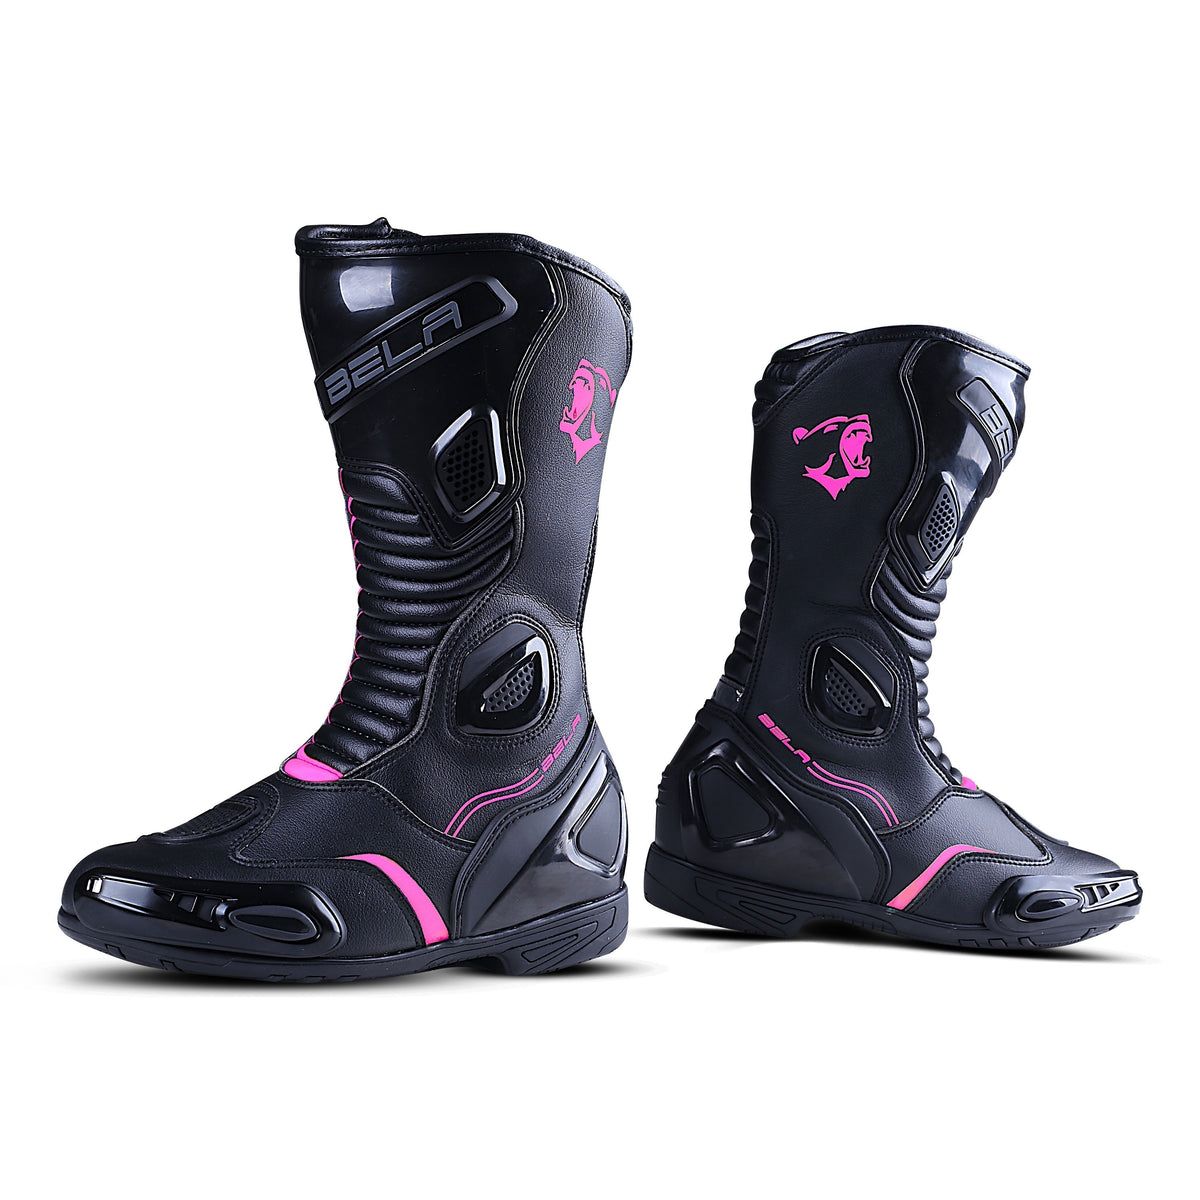 Completamente seco Bañera Refinería Bela Strip Lady bota hecha de cuero para moto,Bota de pista para mujer –  Roady Sport